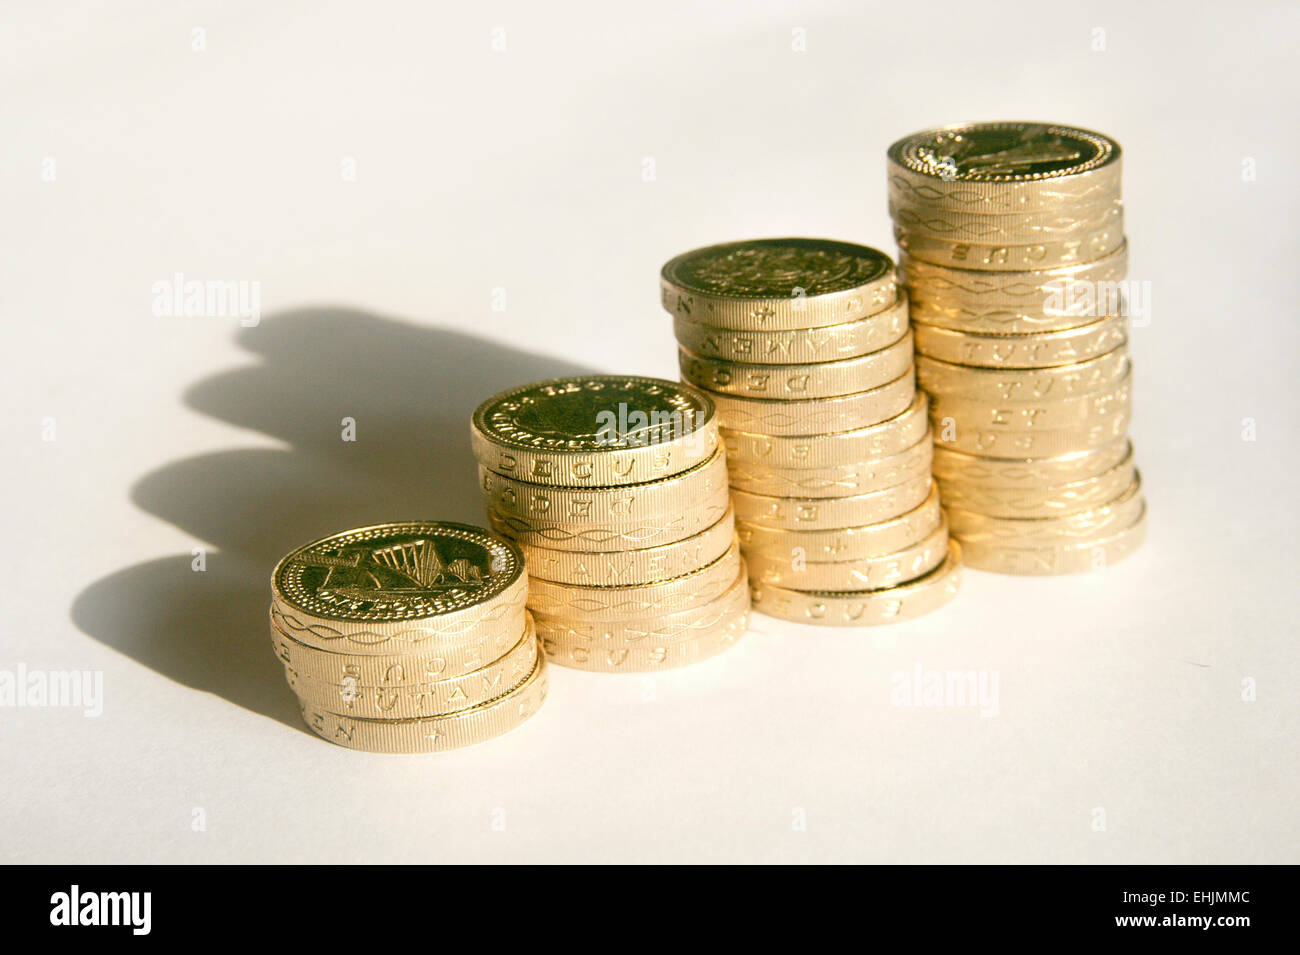 L'argent sterling pound coins uk angleterre enregistrer des économies de l'inflation l'économie économie Banque D'Images